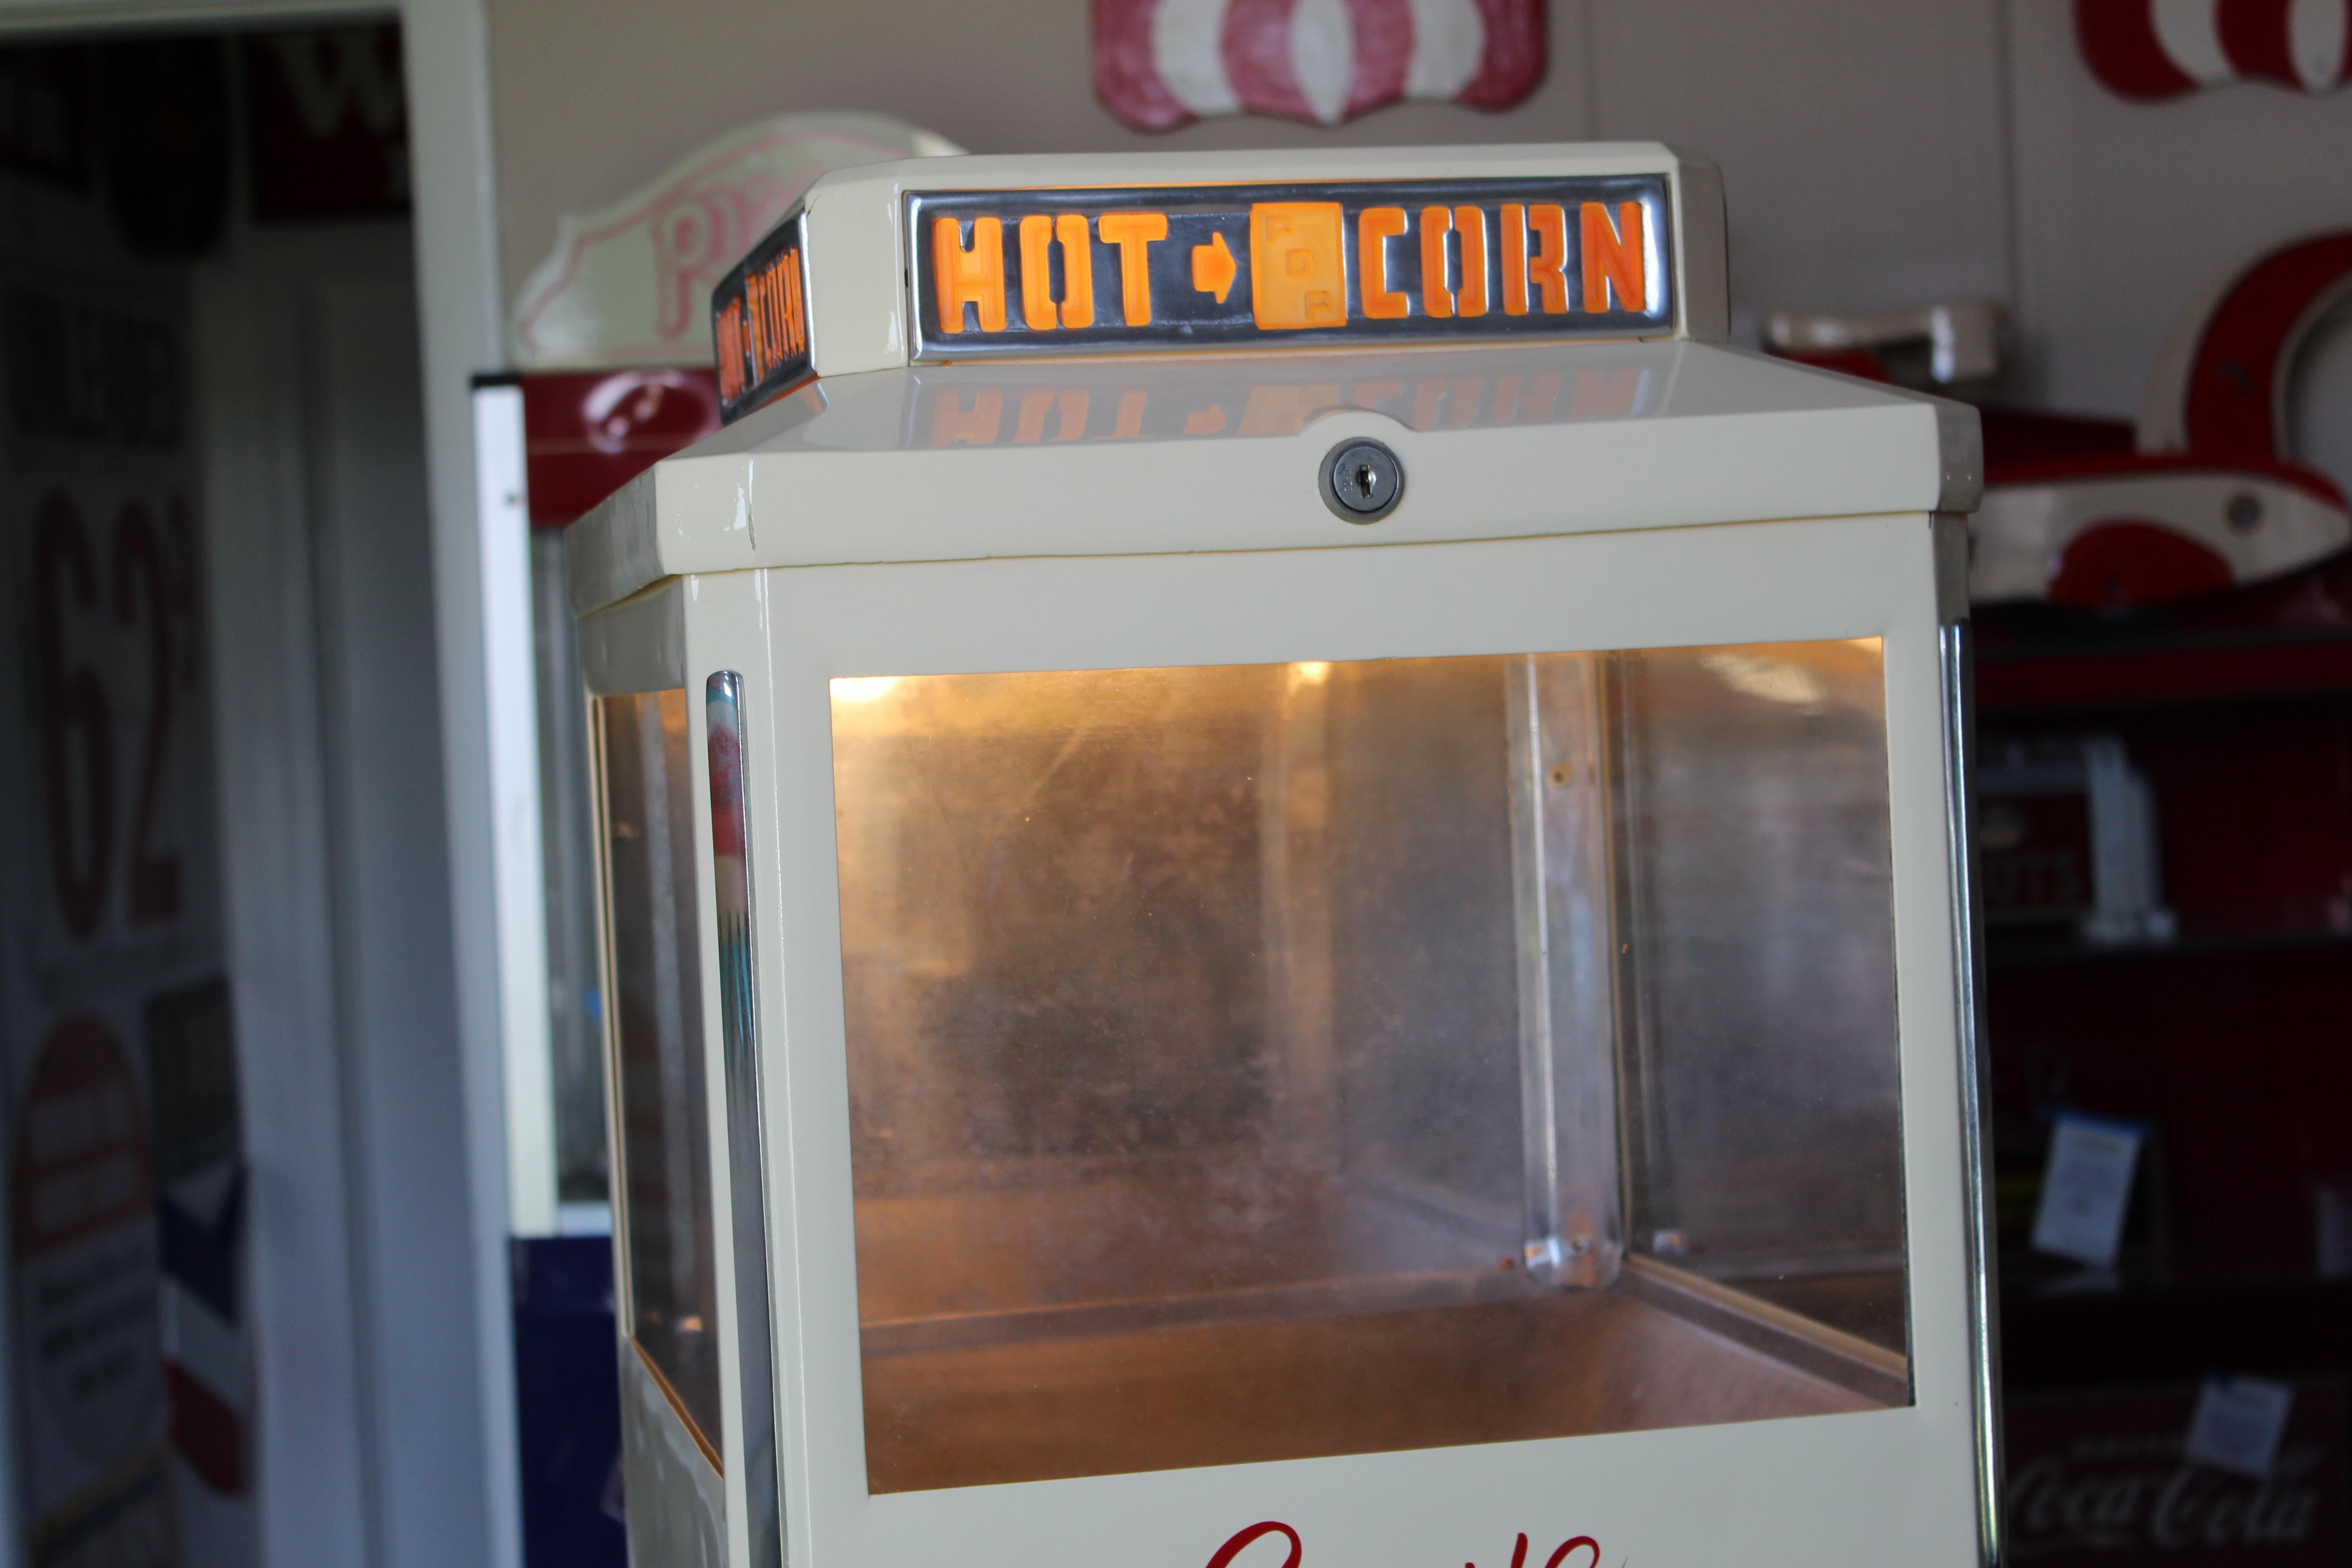 Amazing popcorn warmer machine, restored and hand painted. Ten cent vending machine.